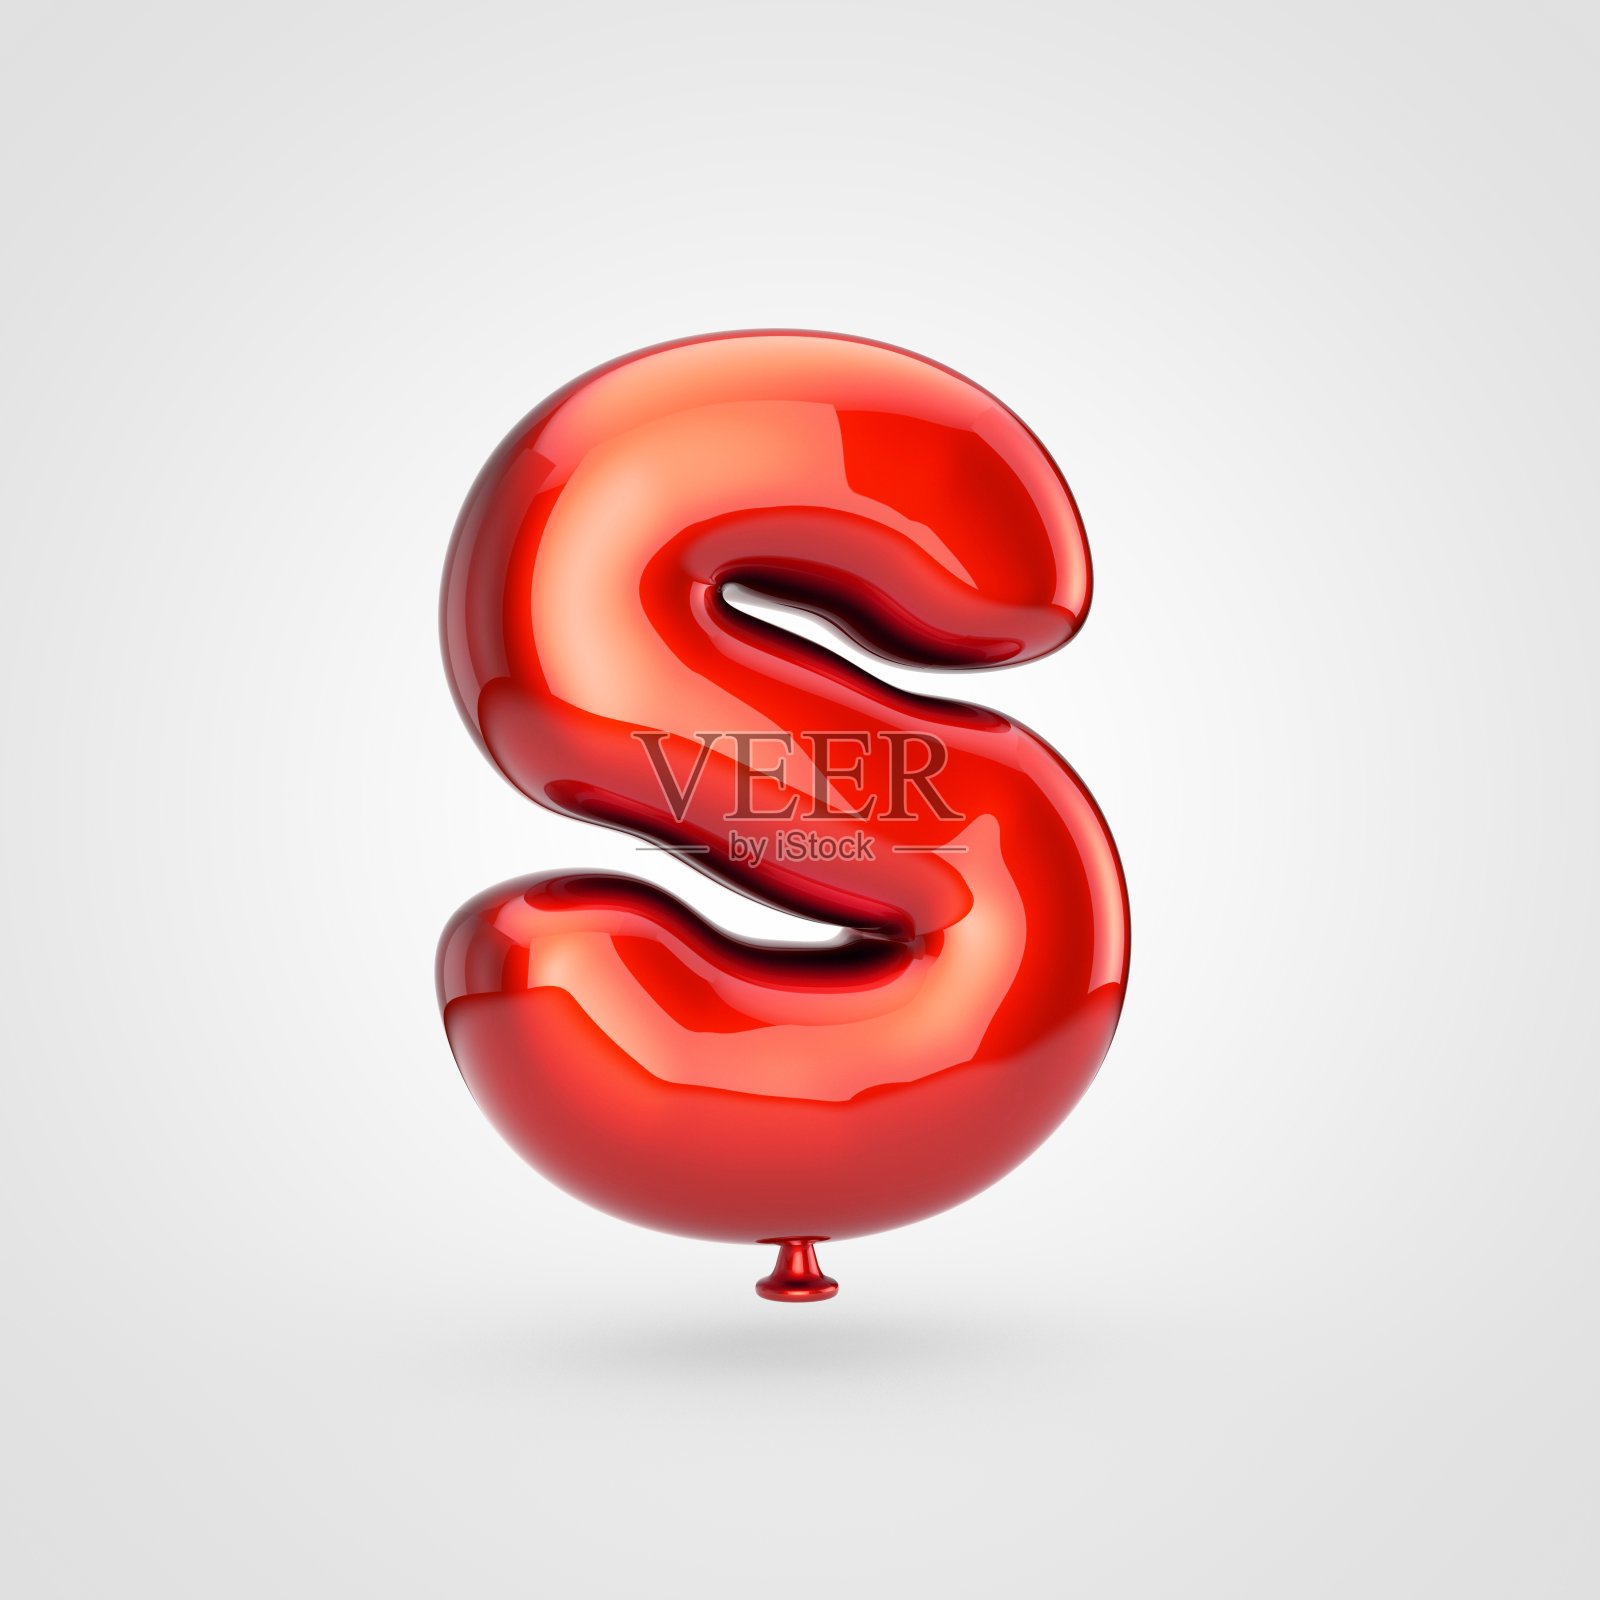 光滑的红色气球大写字母S孤立在白色背景上。设计元素图片